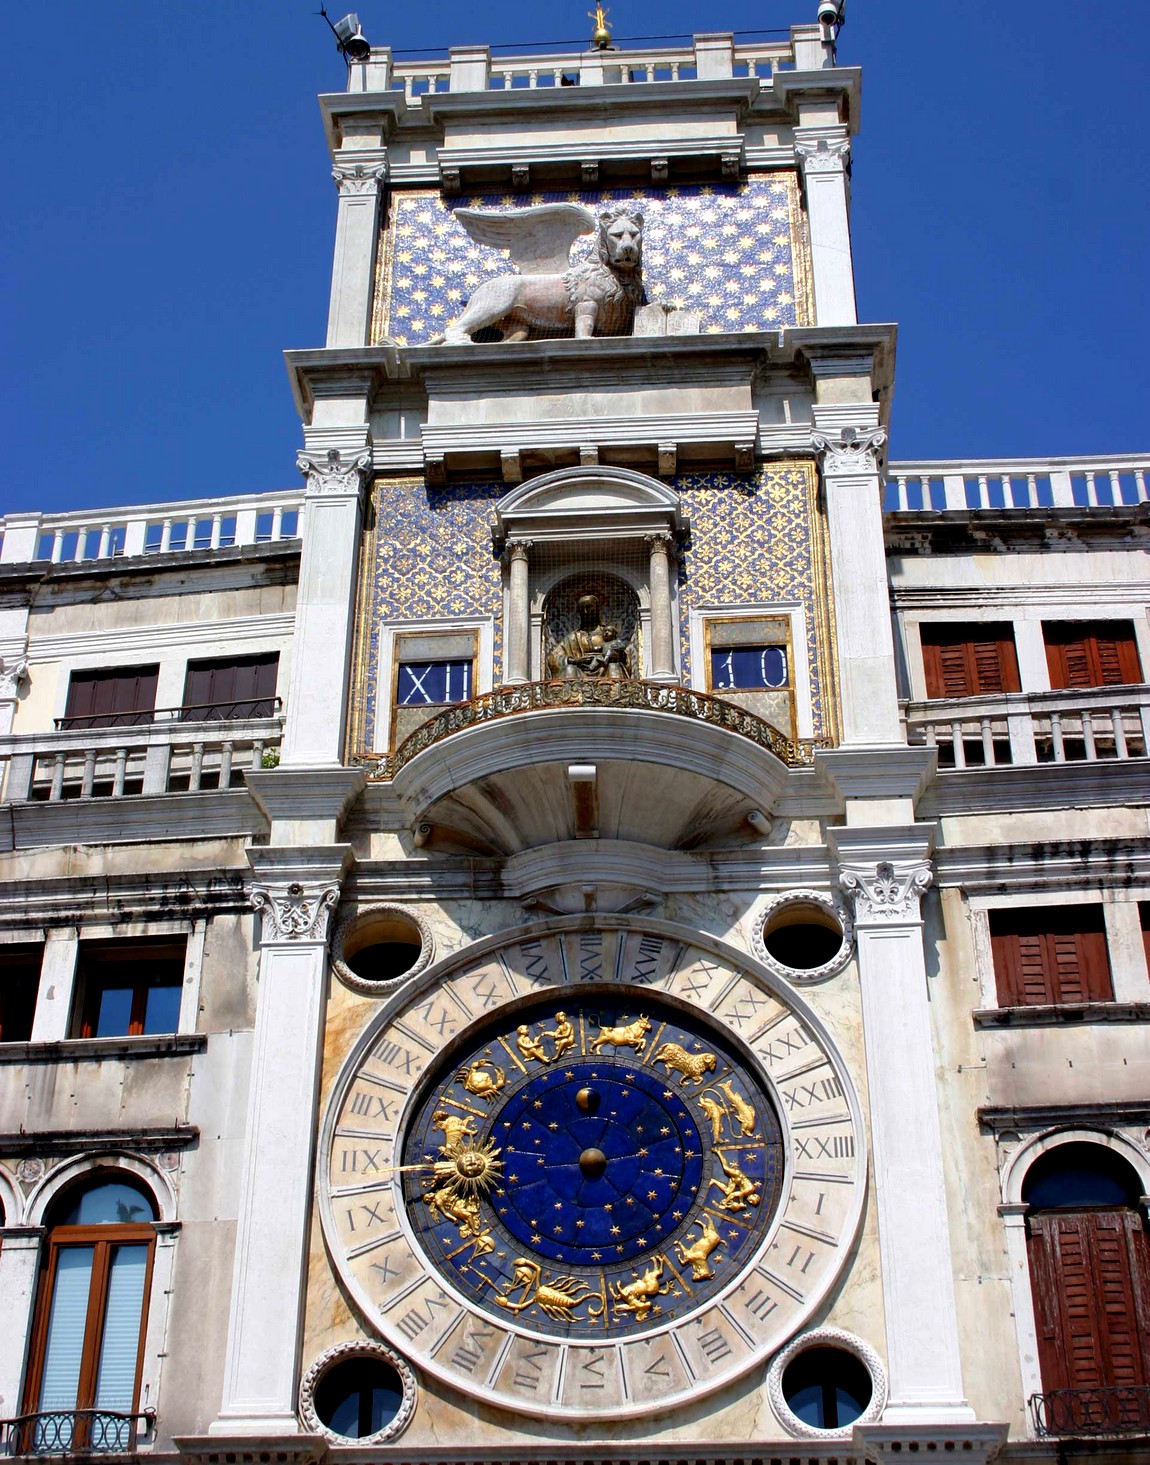 Базилика Сан Марко — кафедральный Собор Венеции (Часовая башня)